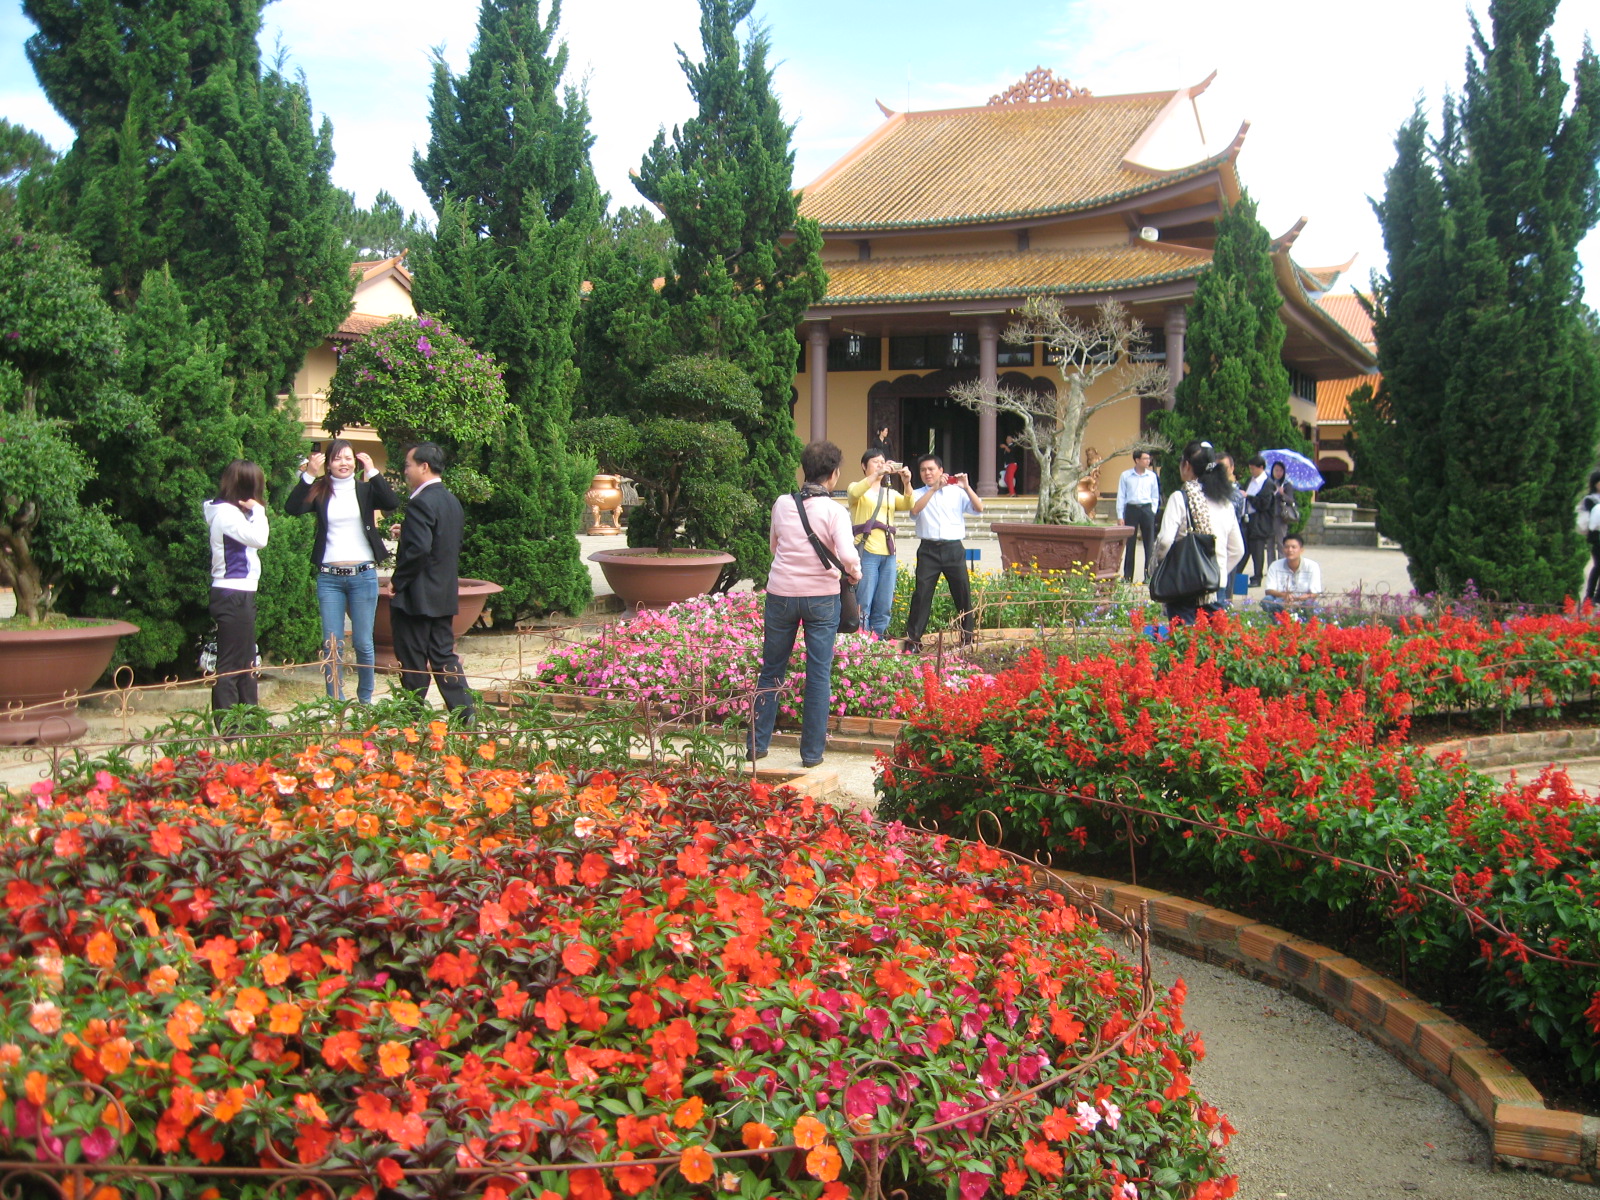 Khu vực vườn hoa với nhiều loài hoa lạ